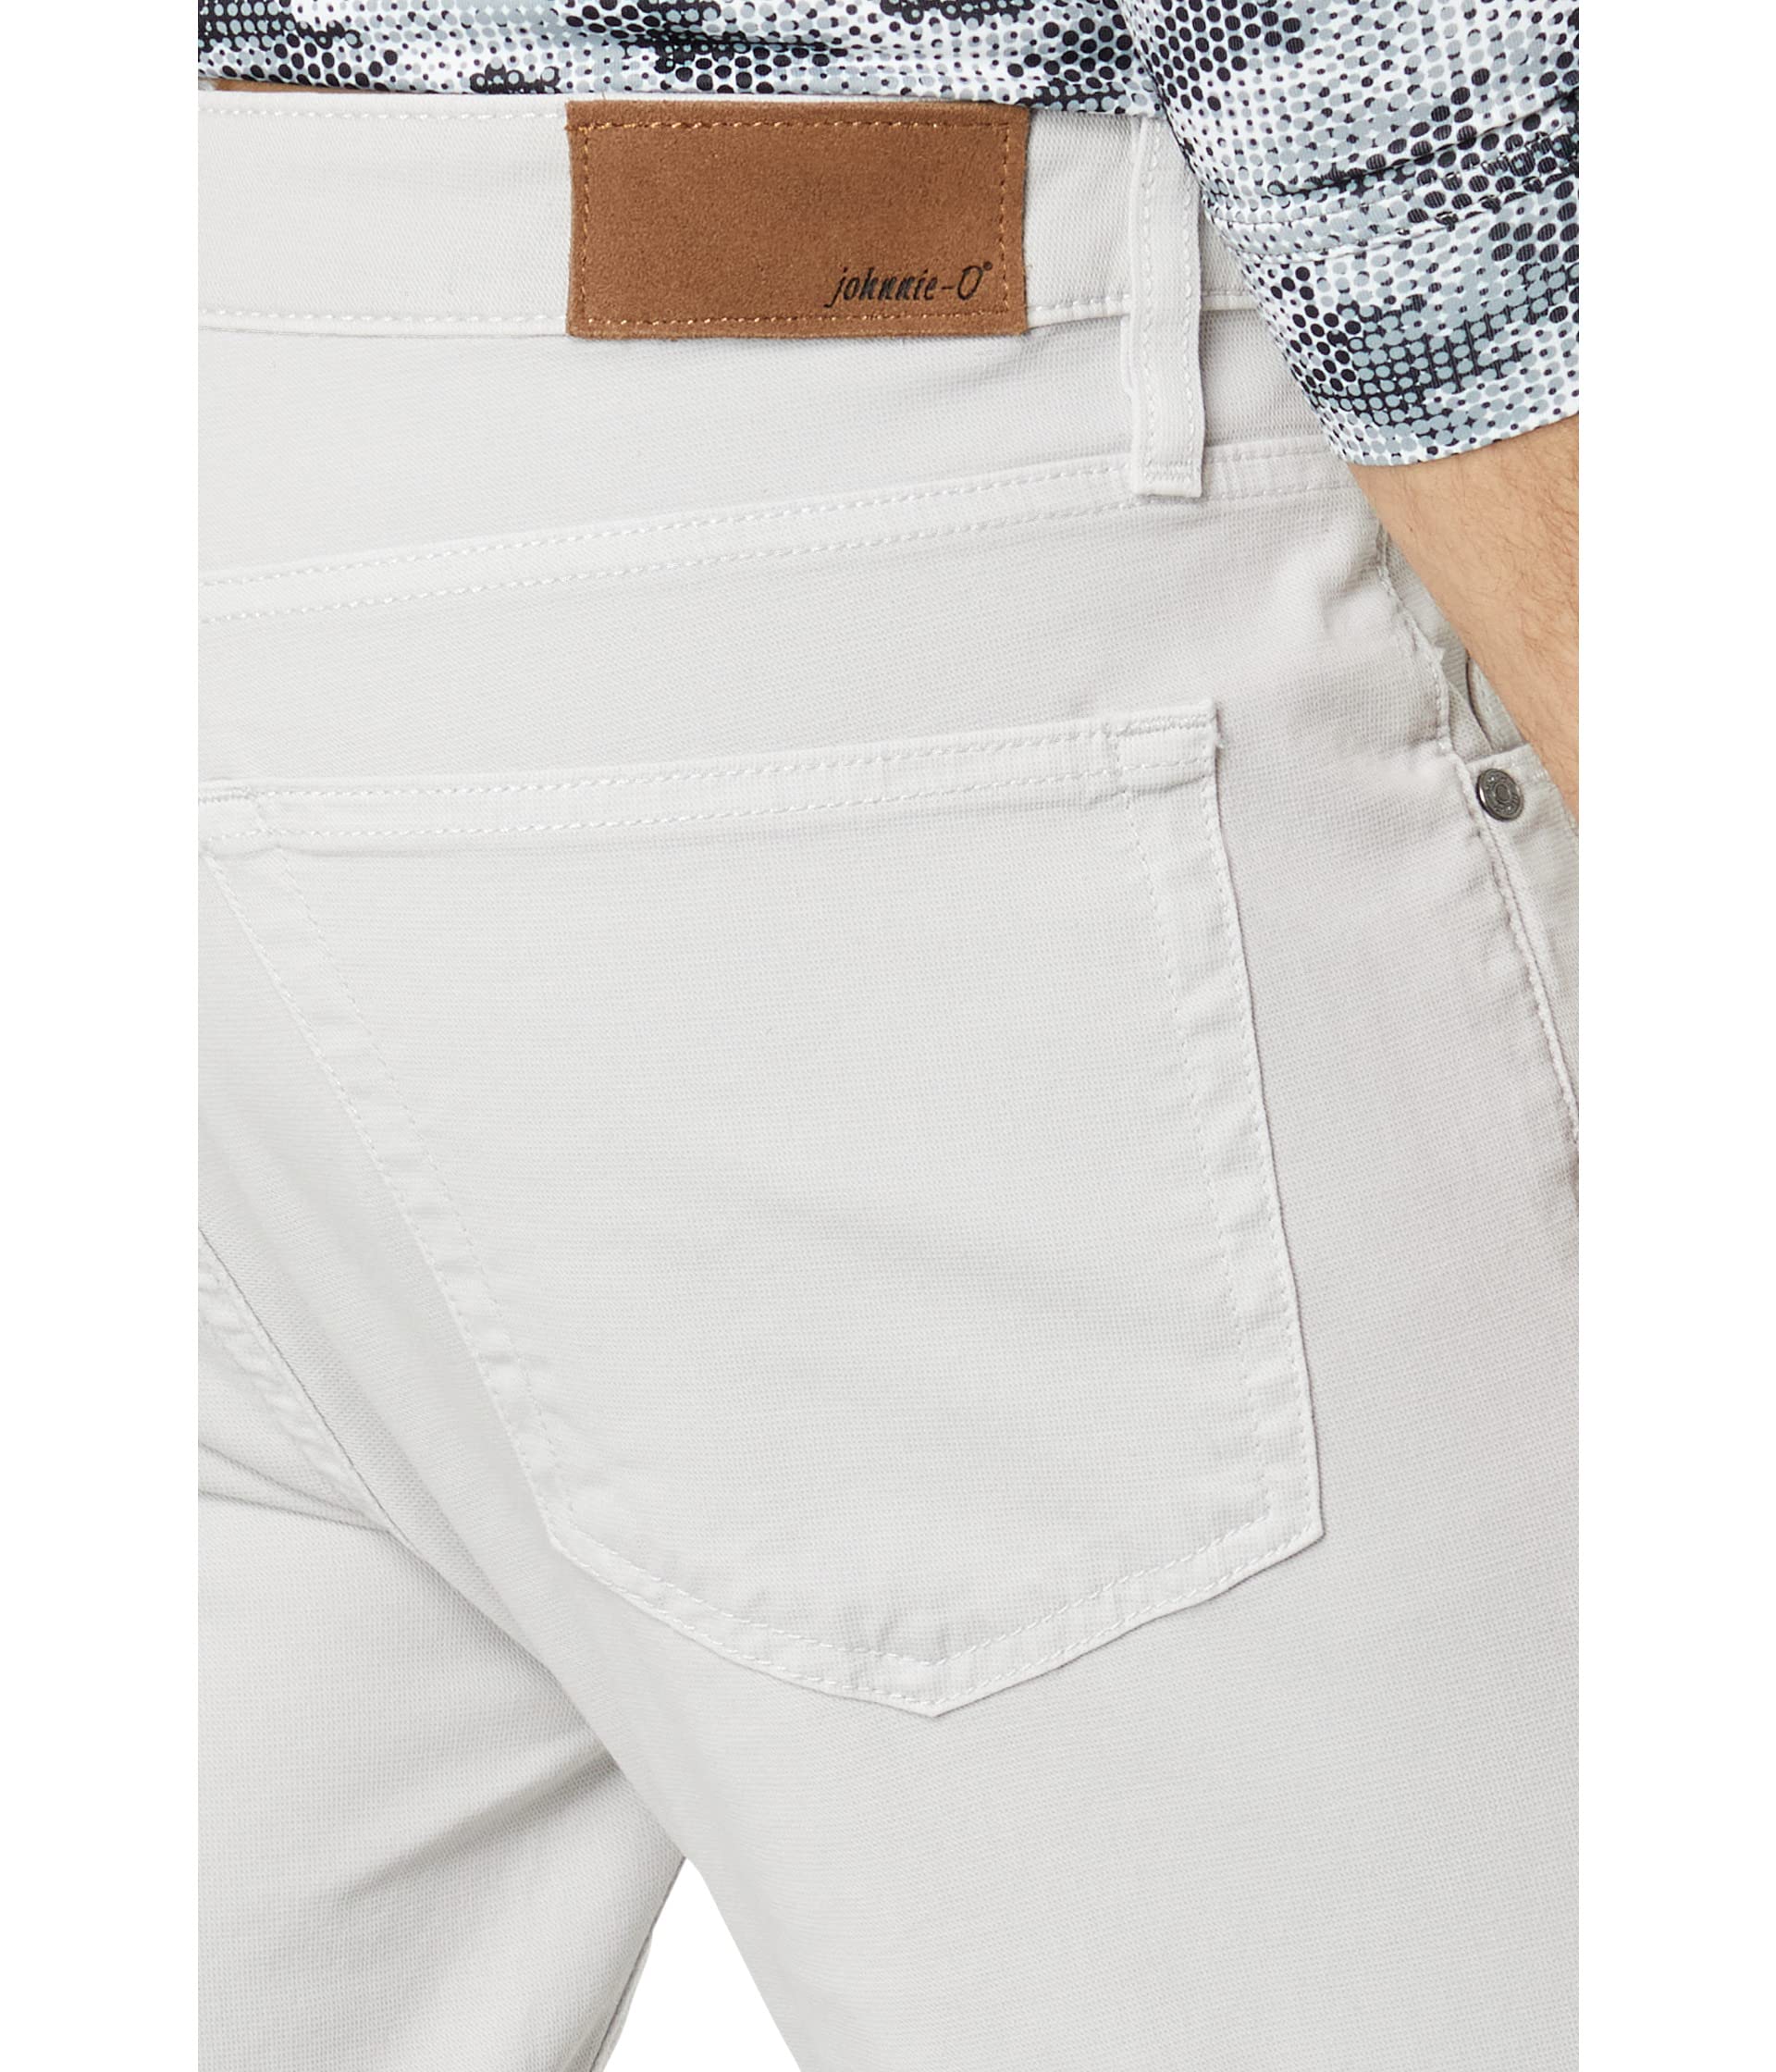 Легкие хромированные джинсы с пятью карманами Atlas Johnnie-O